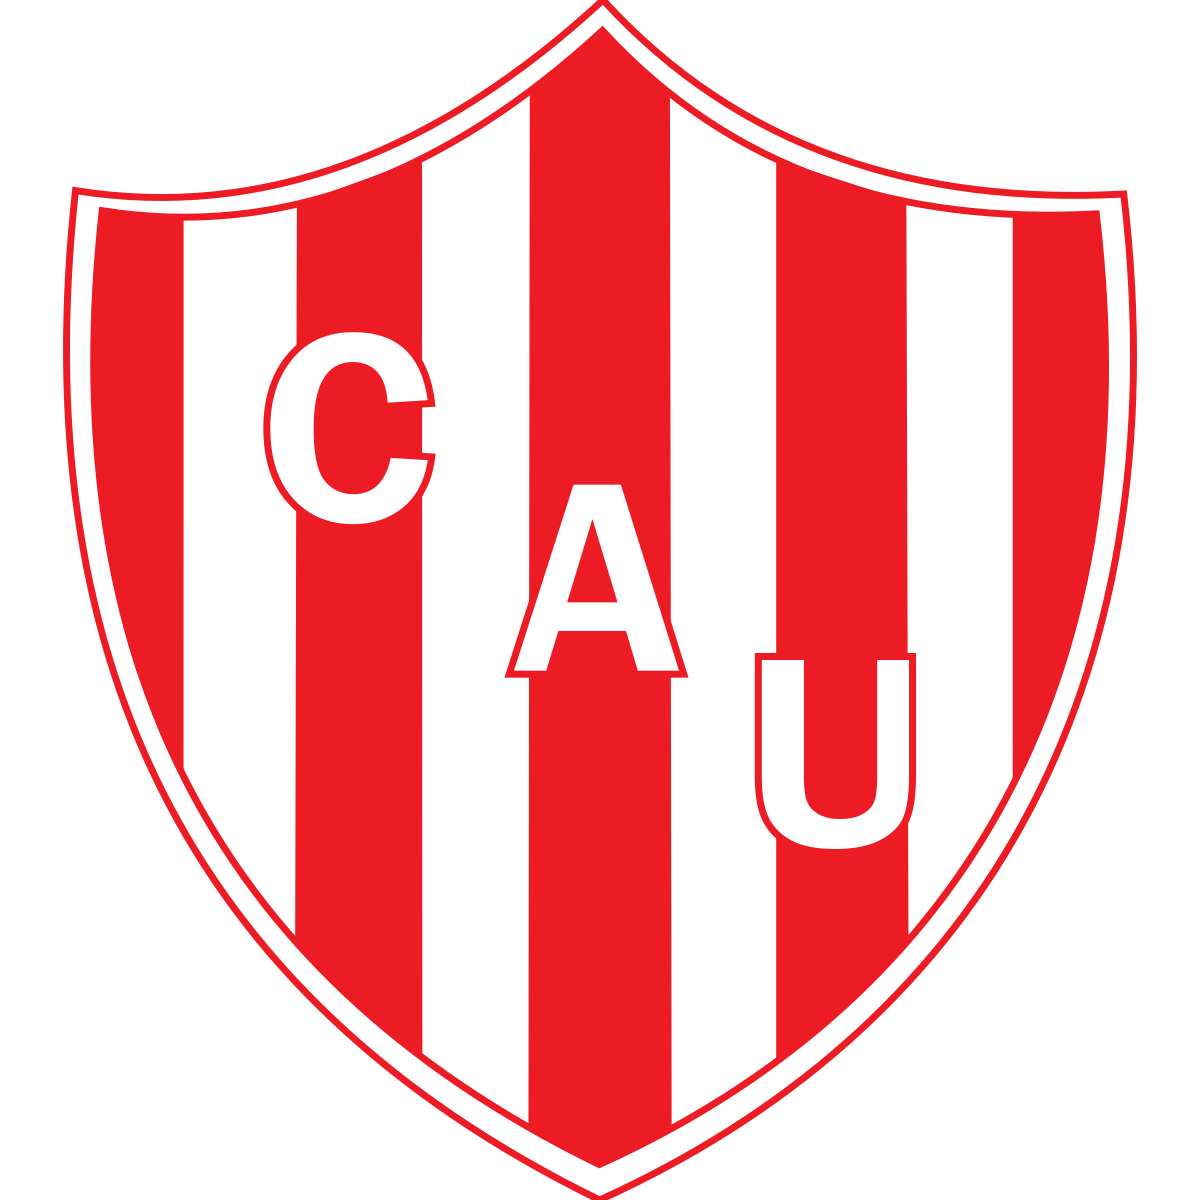 Club Atlético Unión (Santa Wikipedia, la libre